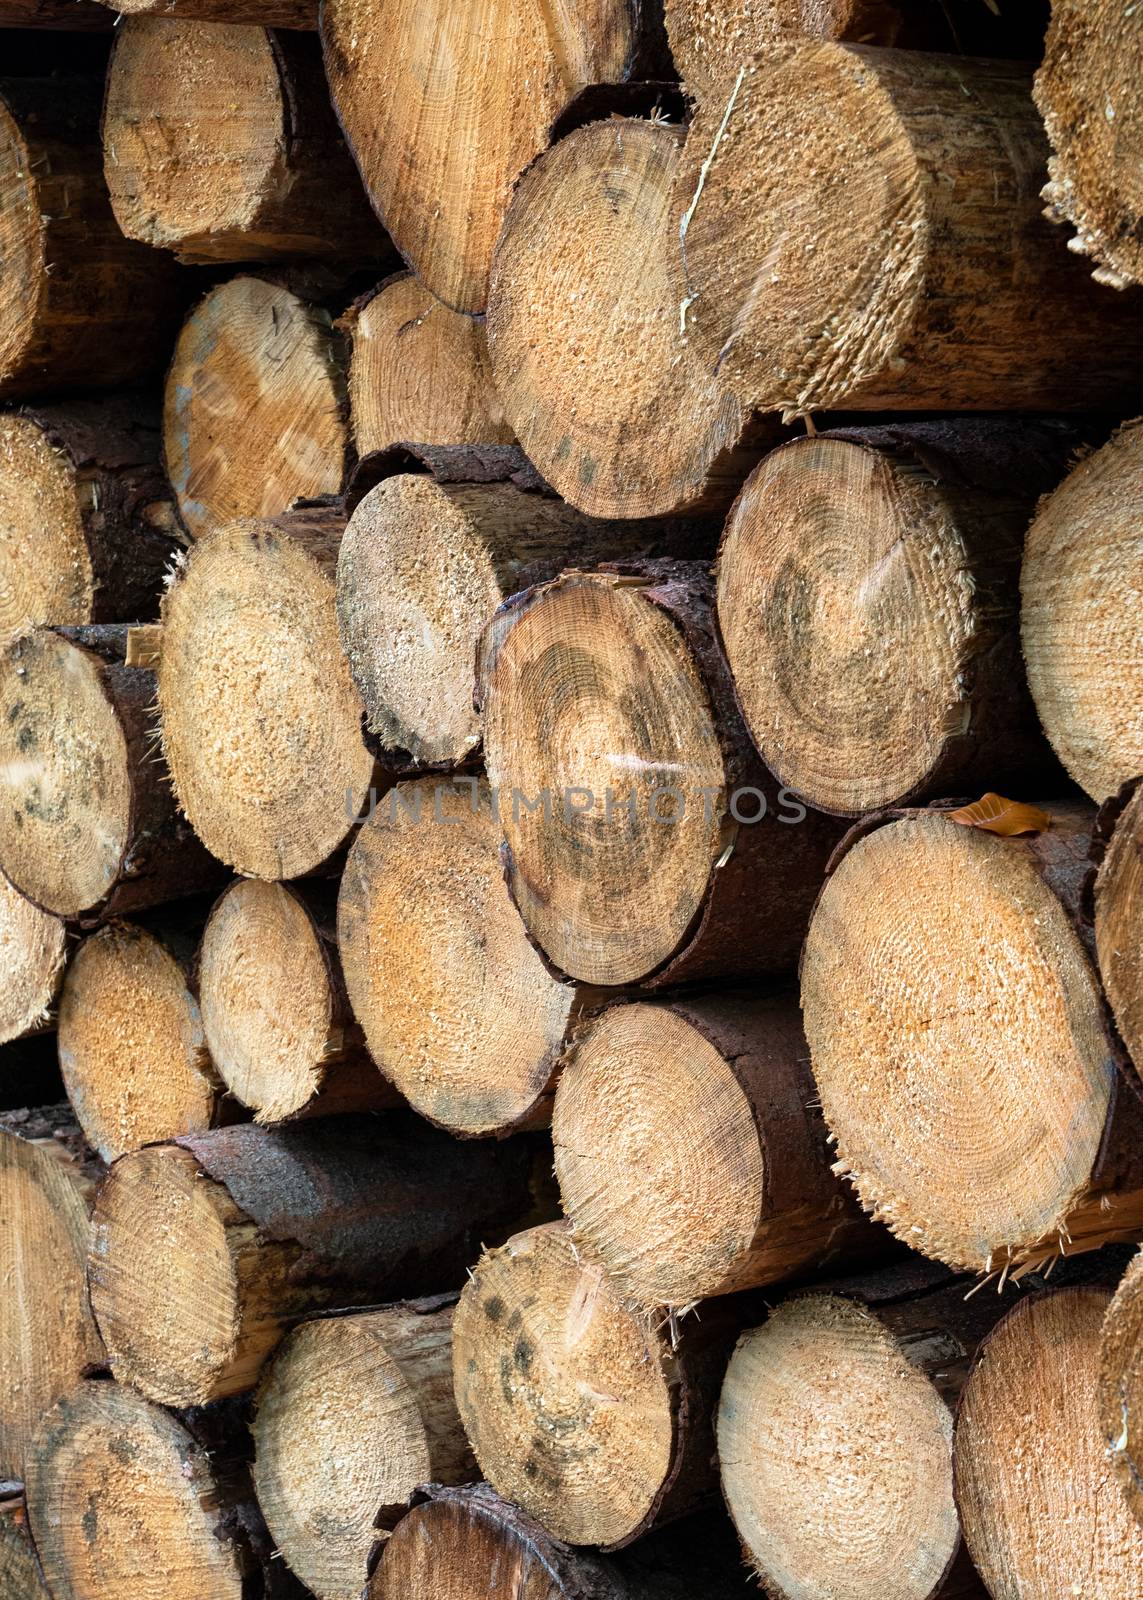 Background image, wood pile by alfotokunst